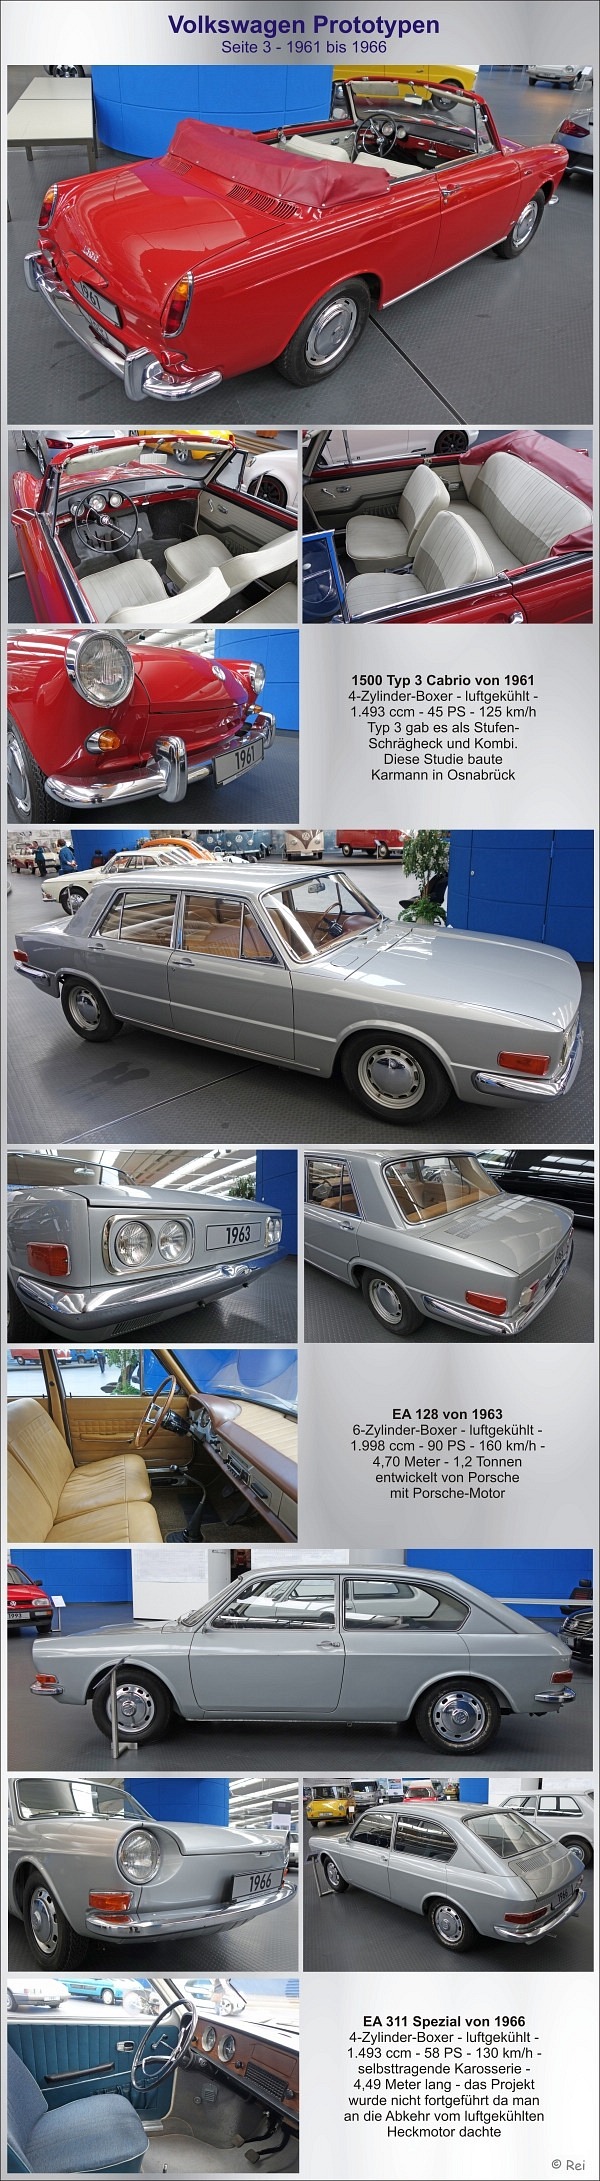 VW Prototypen - Seite 3 - 1961-1966